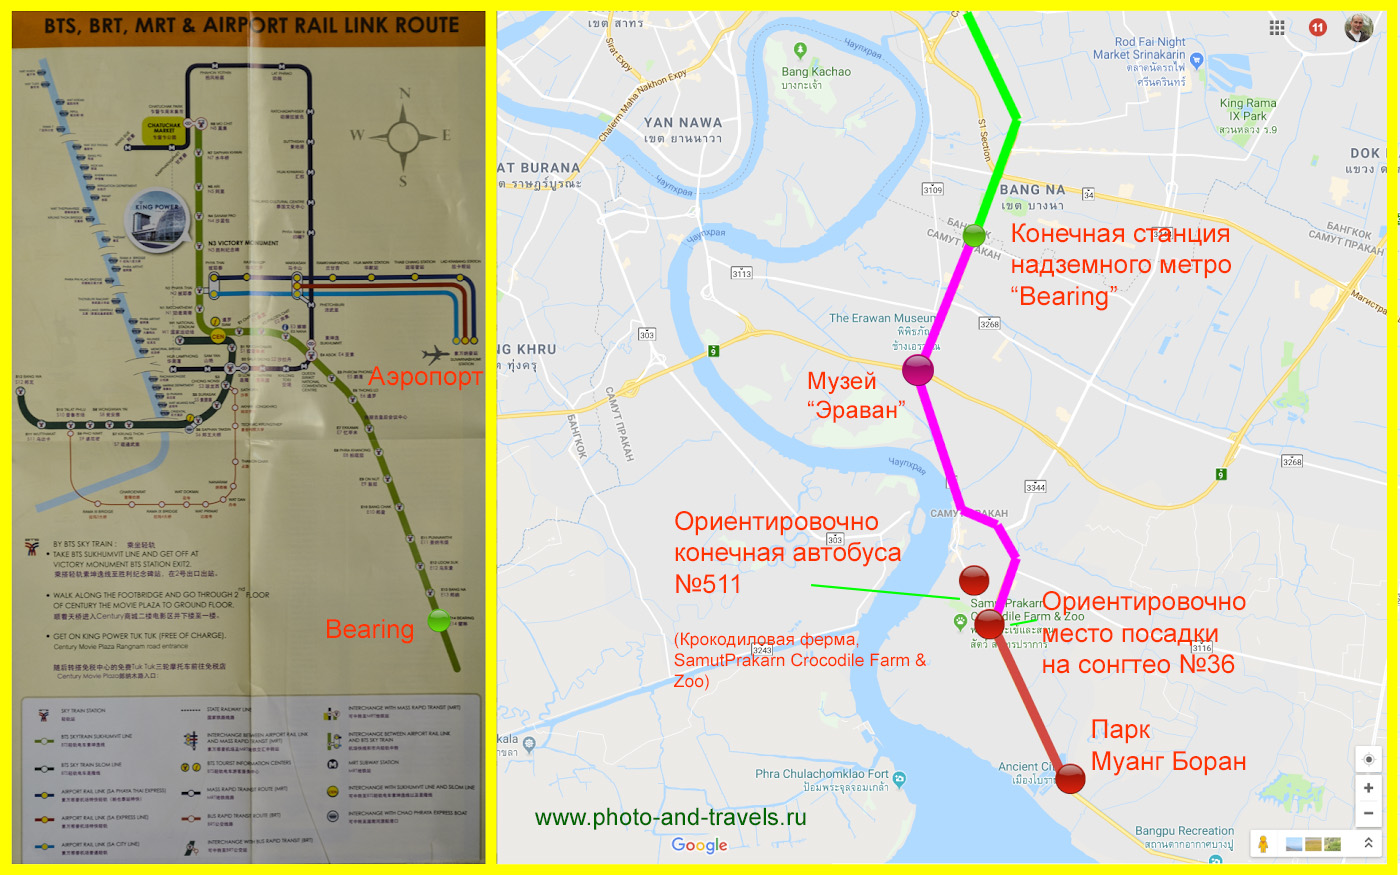 Карта со схемой, как добраться в исторический парк Муанг Боран (Ancient City) в Бангкоке.